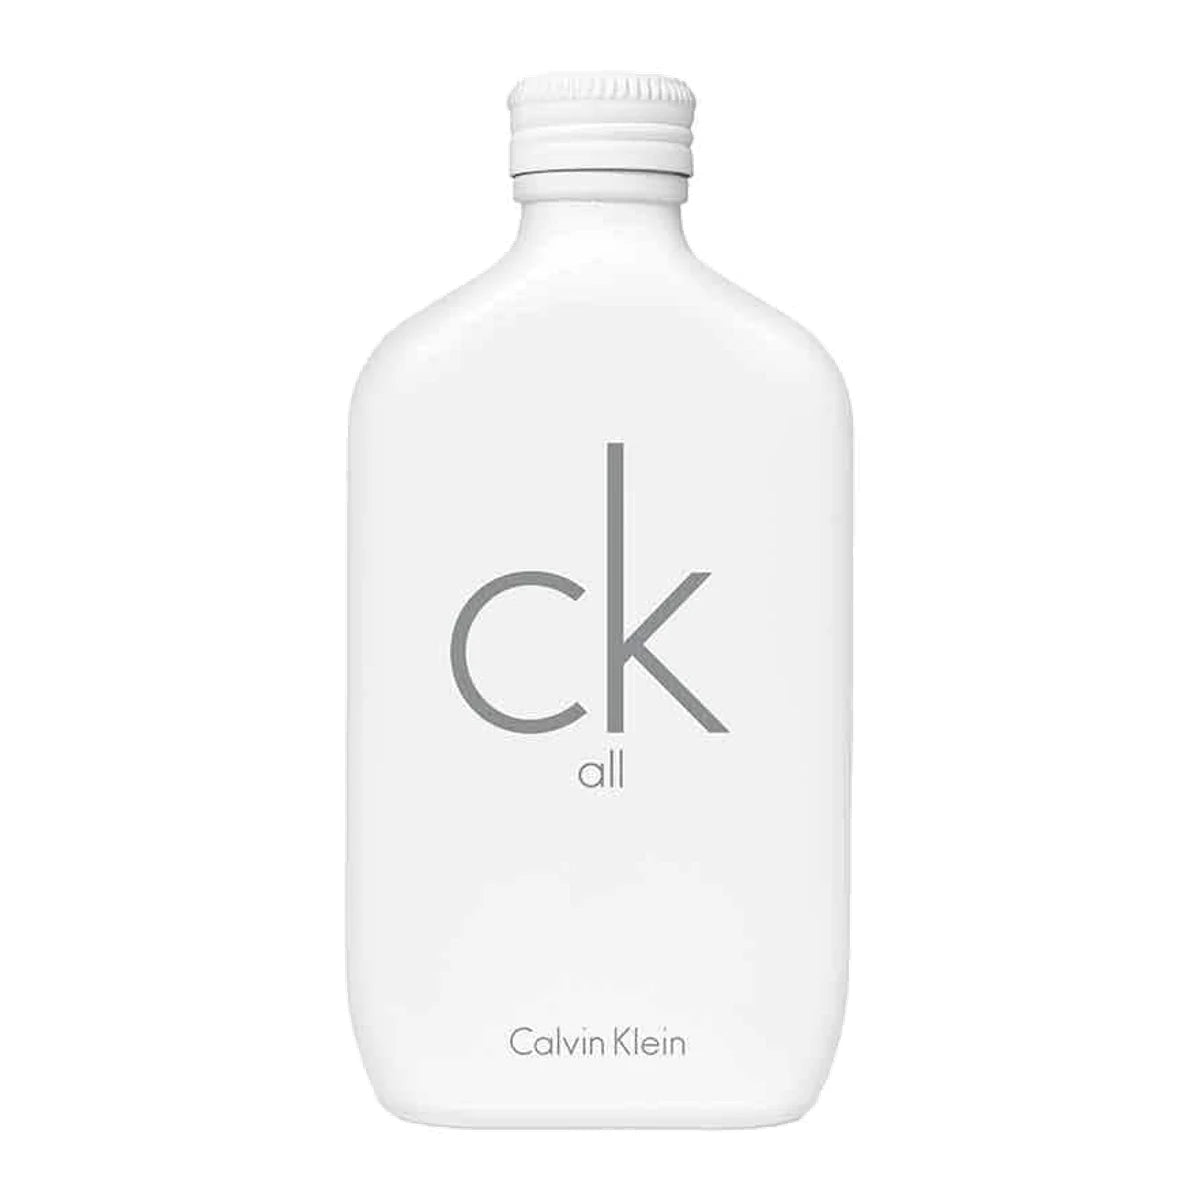 Calvin Klein All Eau de Toilette 6.7 oz